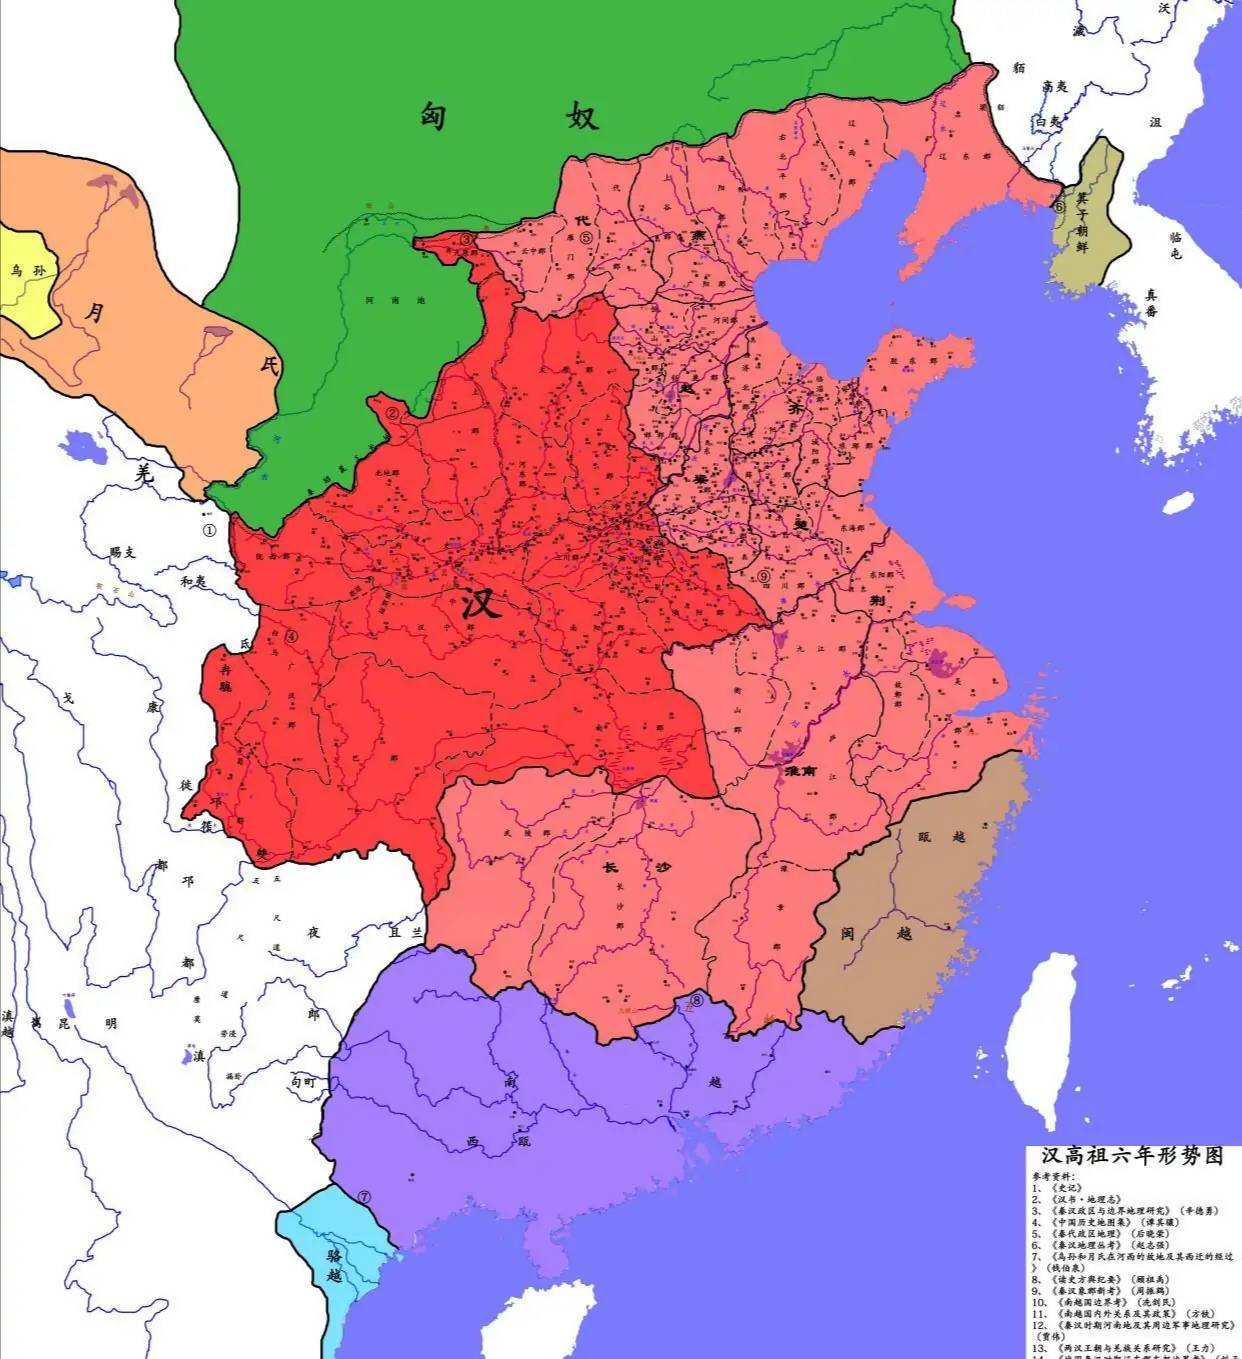 西汉初期诸侯王占据的土地达到了全国总面积的三分之二,而中央朝廷